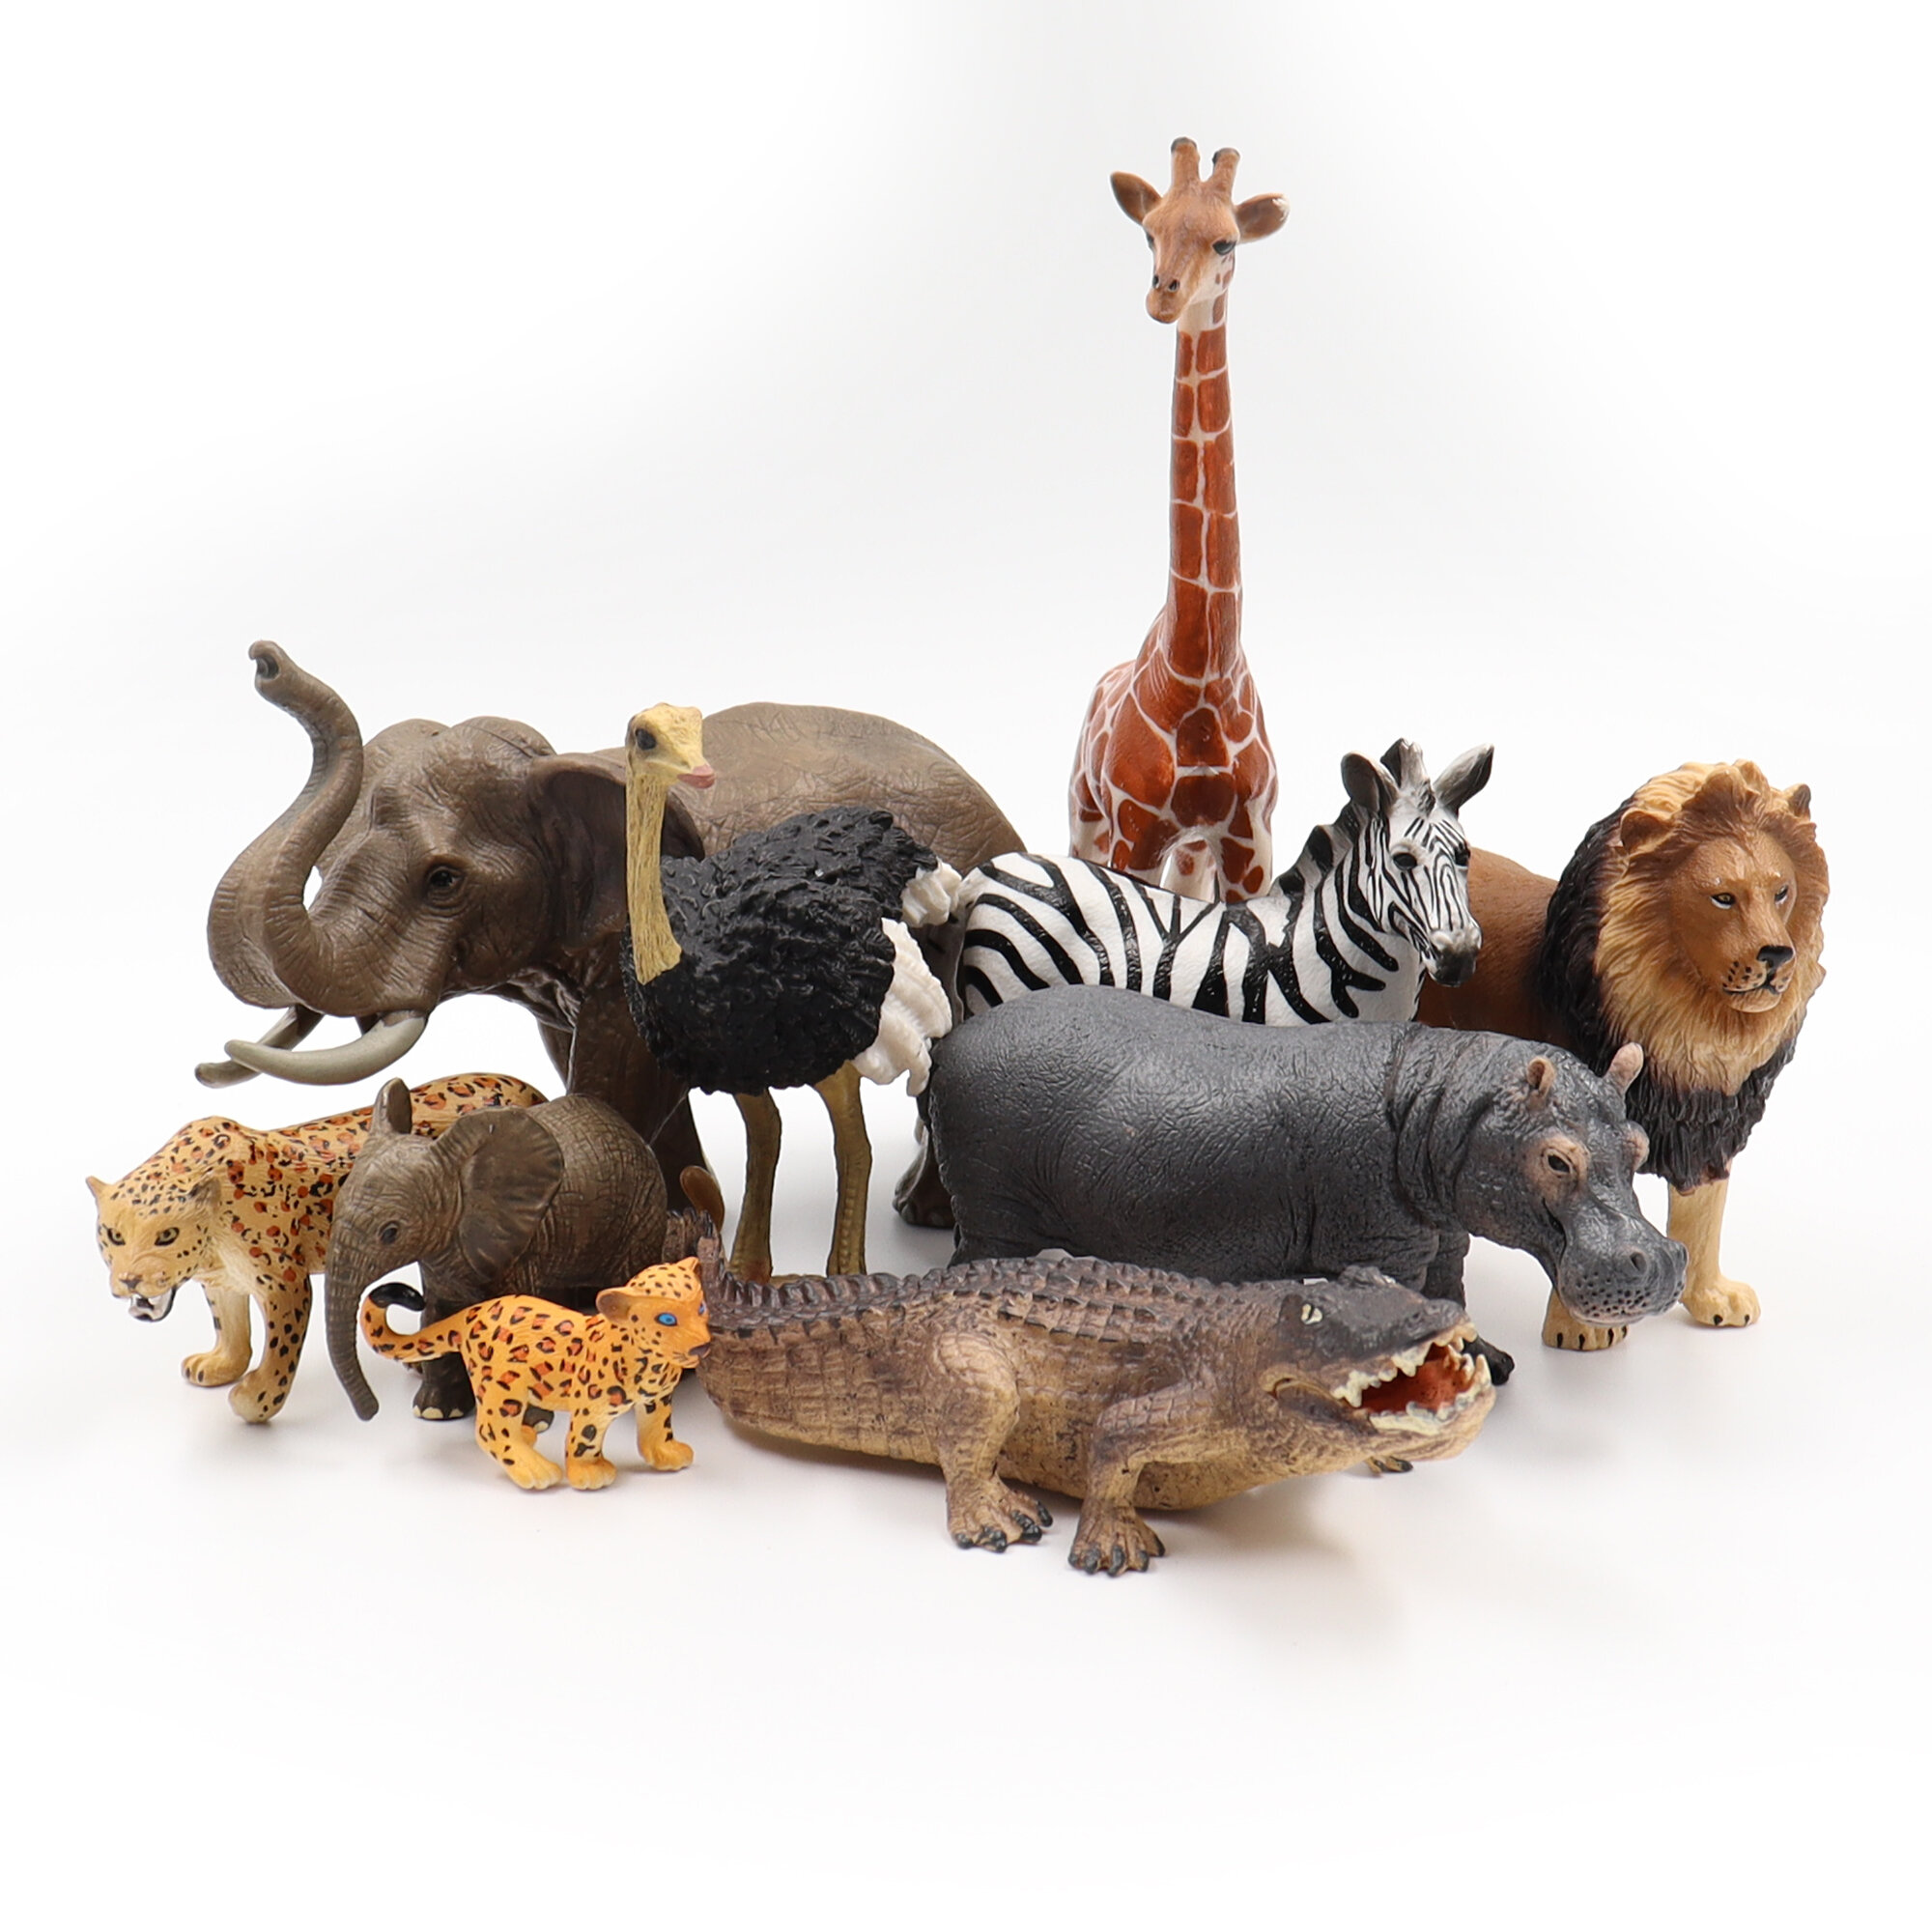 Фигурки диких животных детский игровой набор Zateyo Сафари игрушка для детей коллекционная декоративная 10 шт.